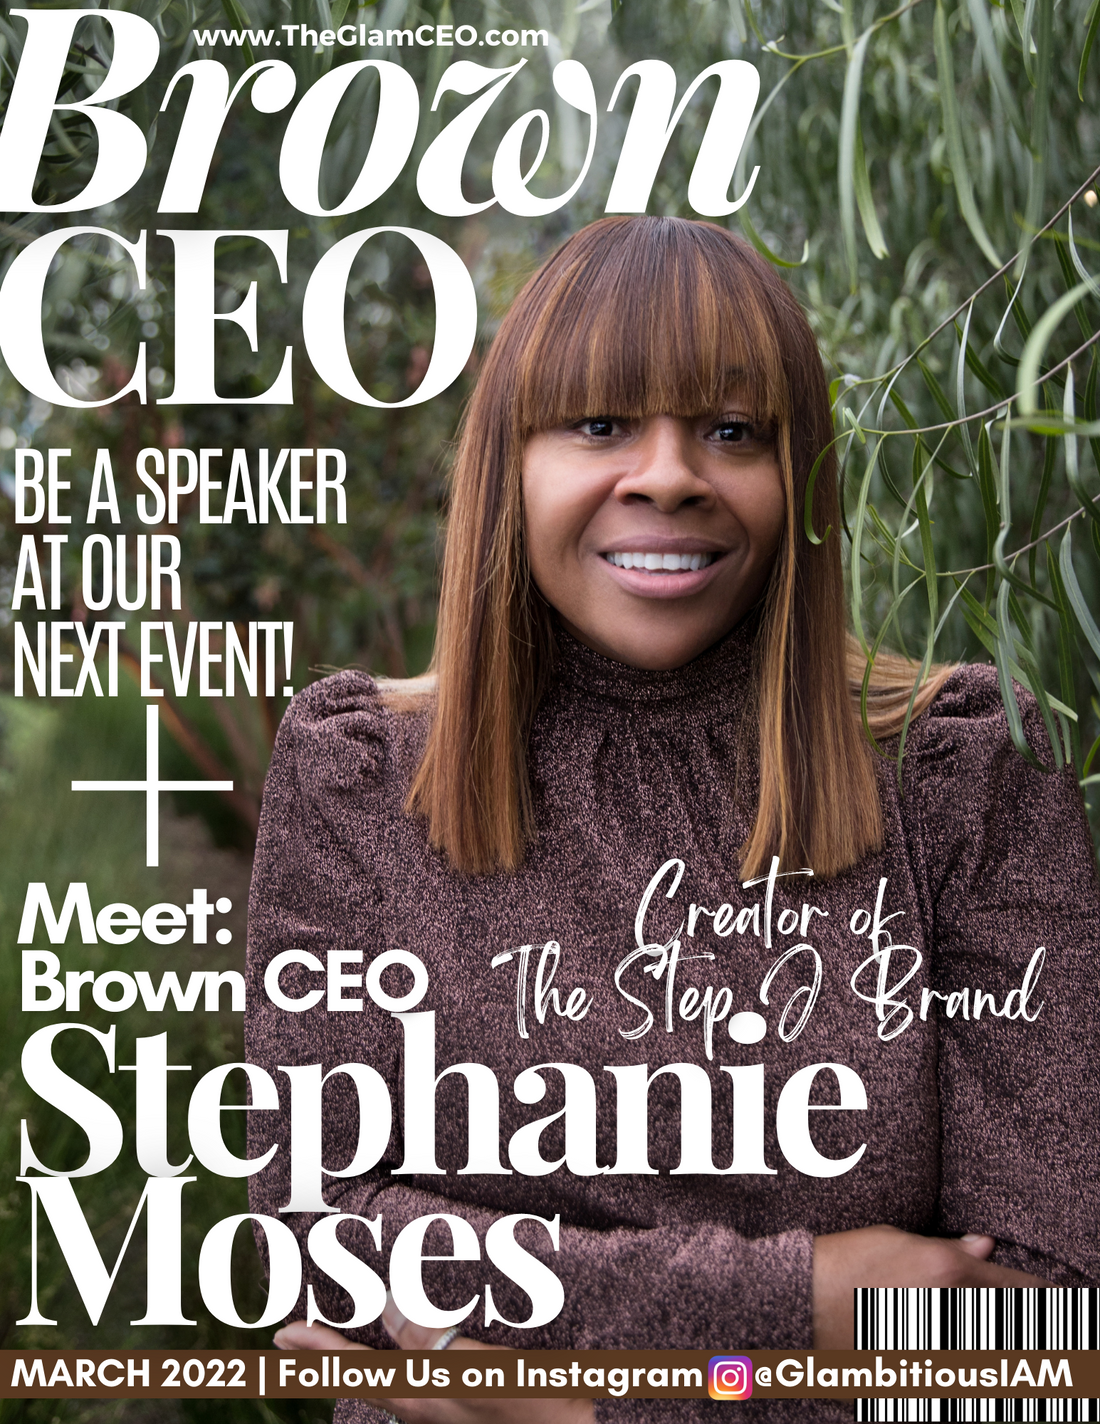 Meet Brown CEO! Stephanie Moses